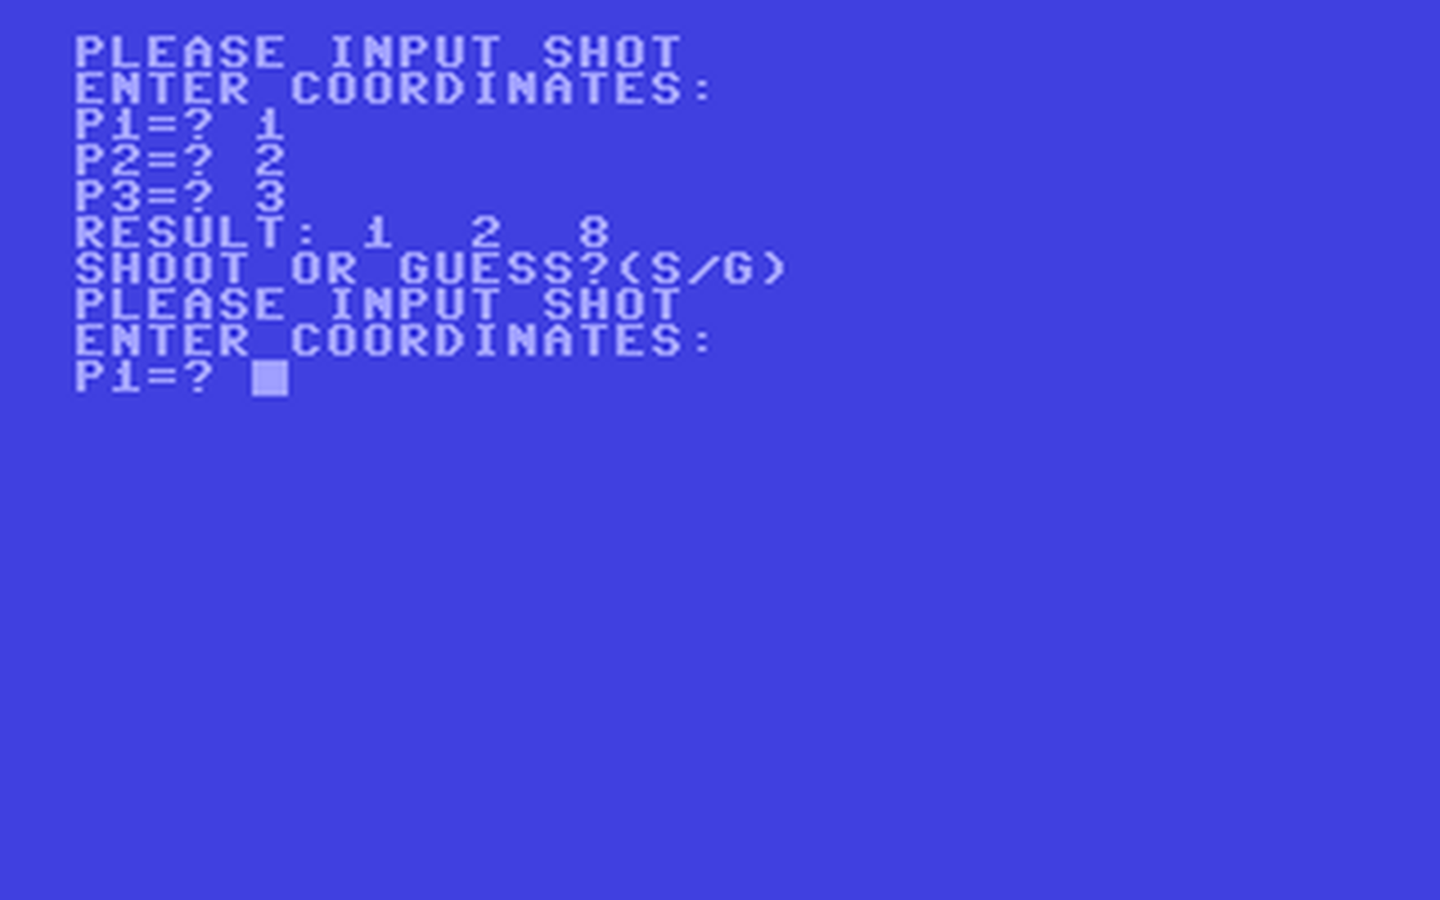 C64 GameBase Blackbox Addison-Wesley_Publishers_Ltd. 1984